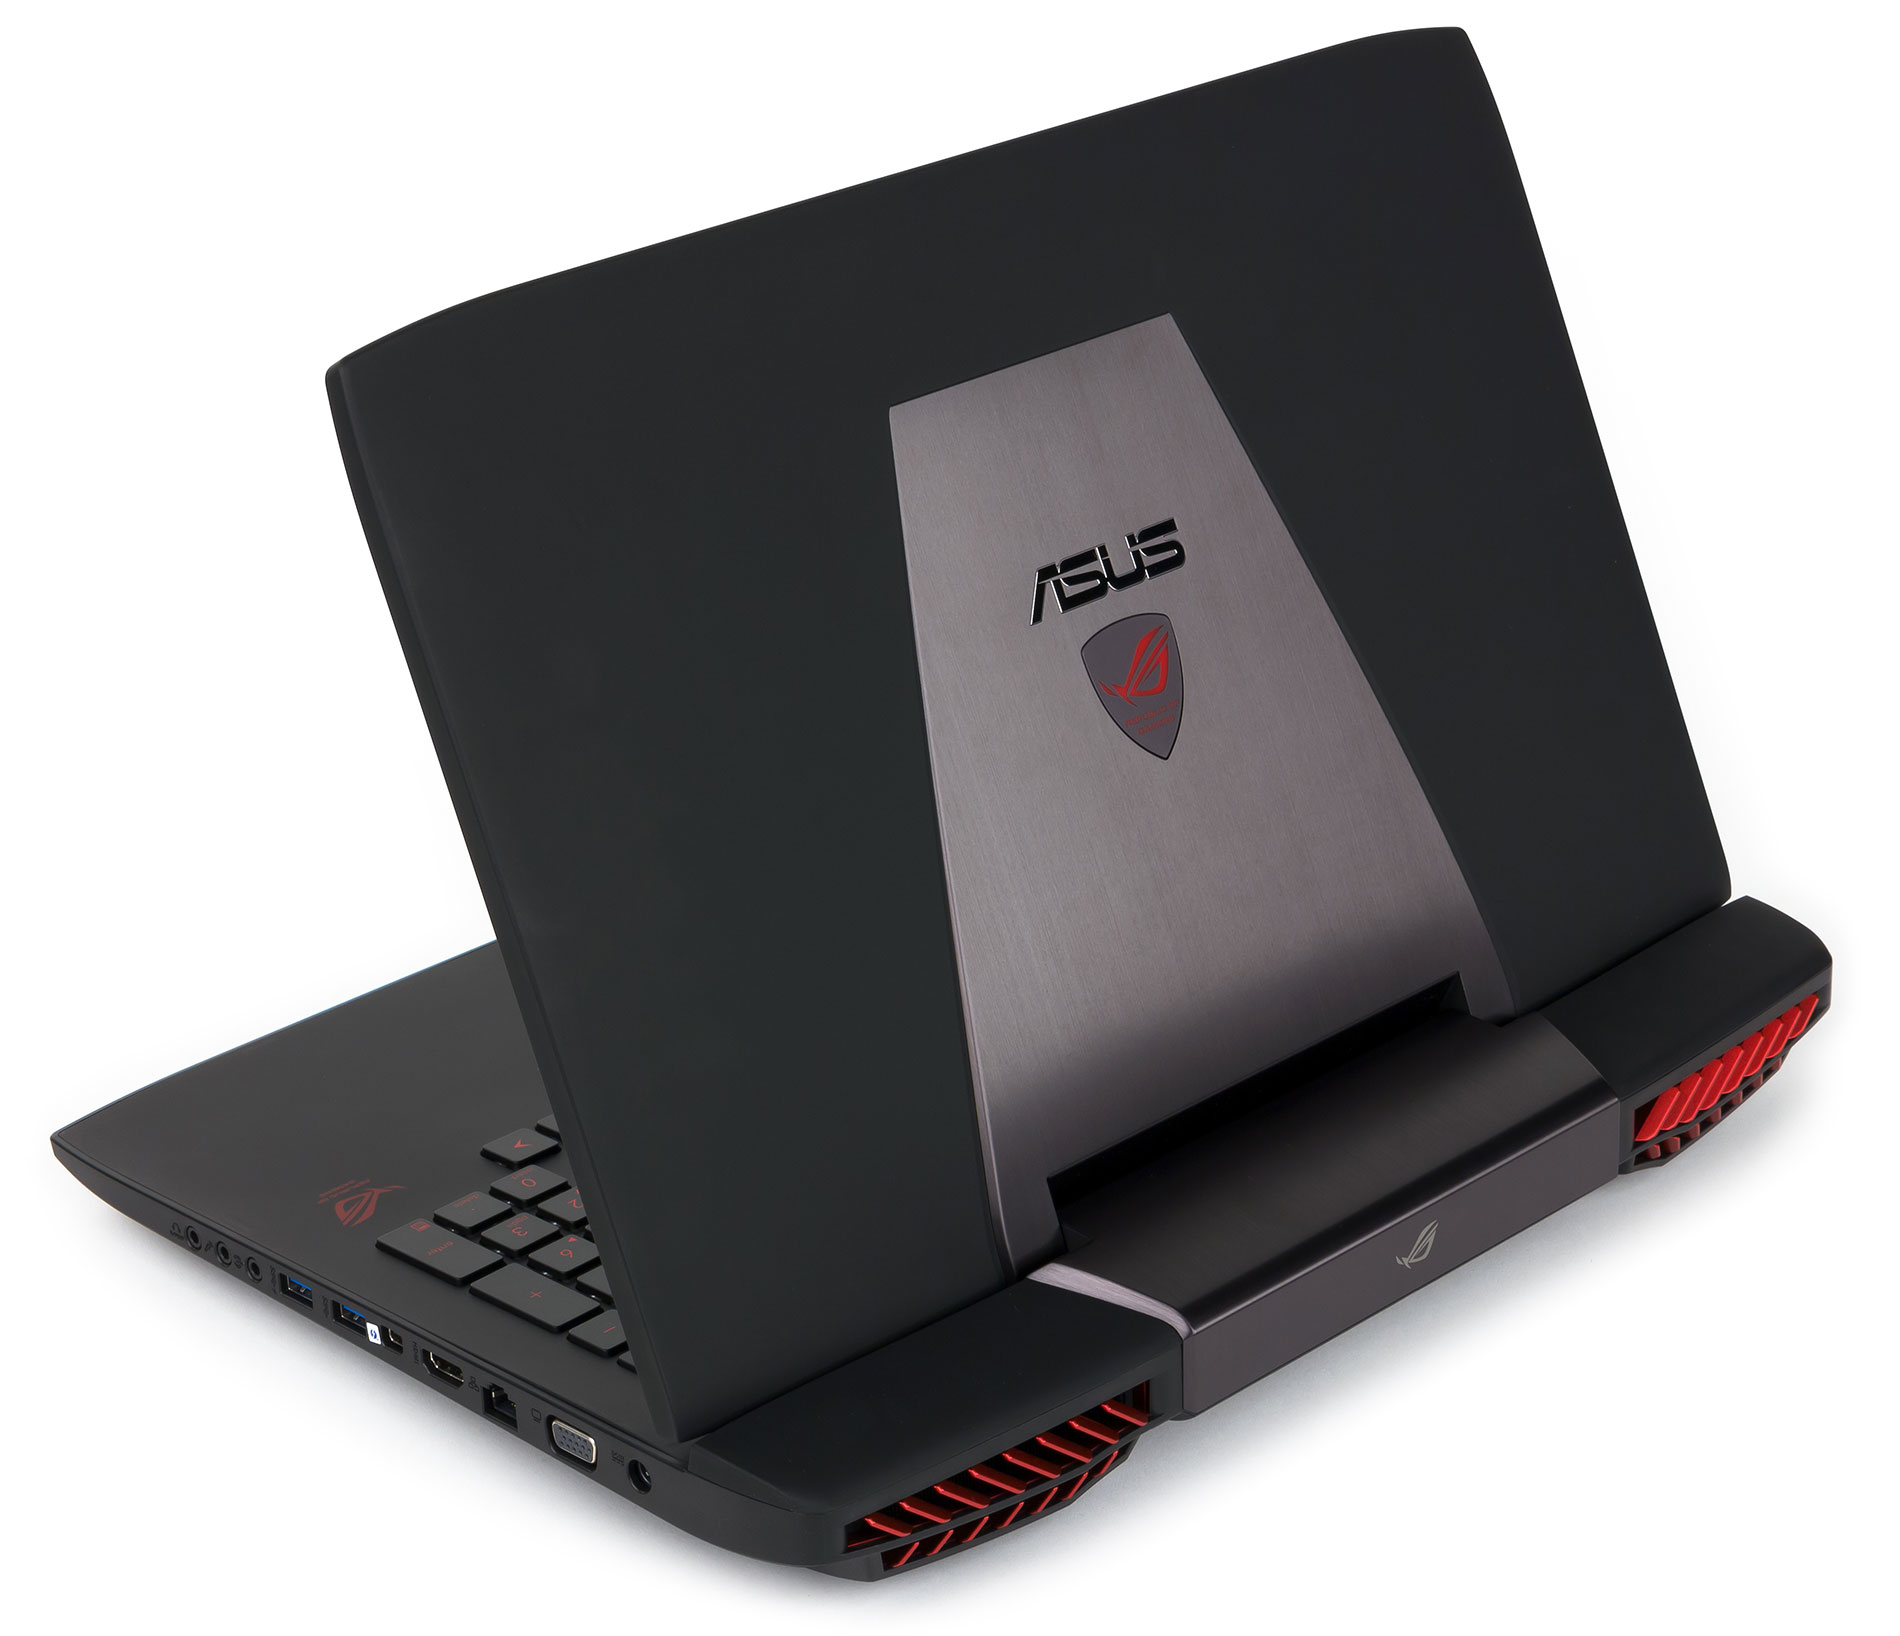 Купить Ноутбук Asus Rog G750jz В Интернет Магазине